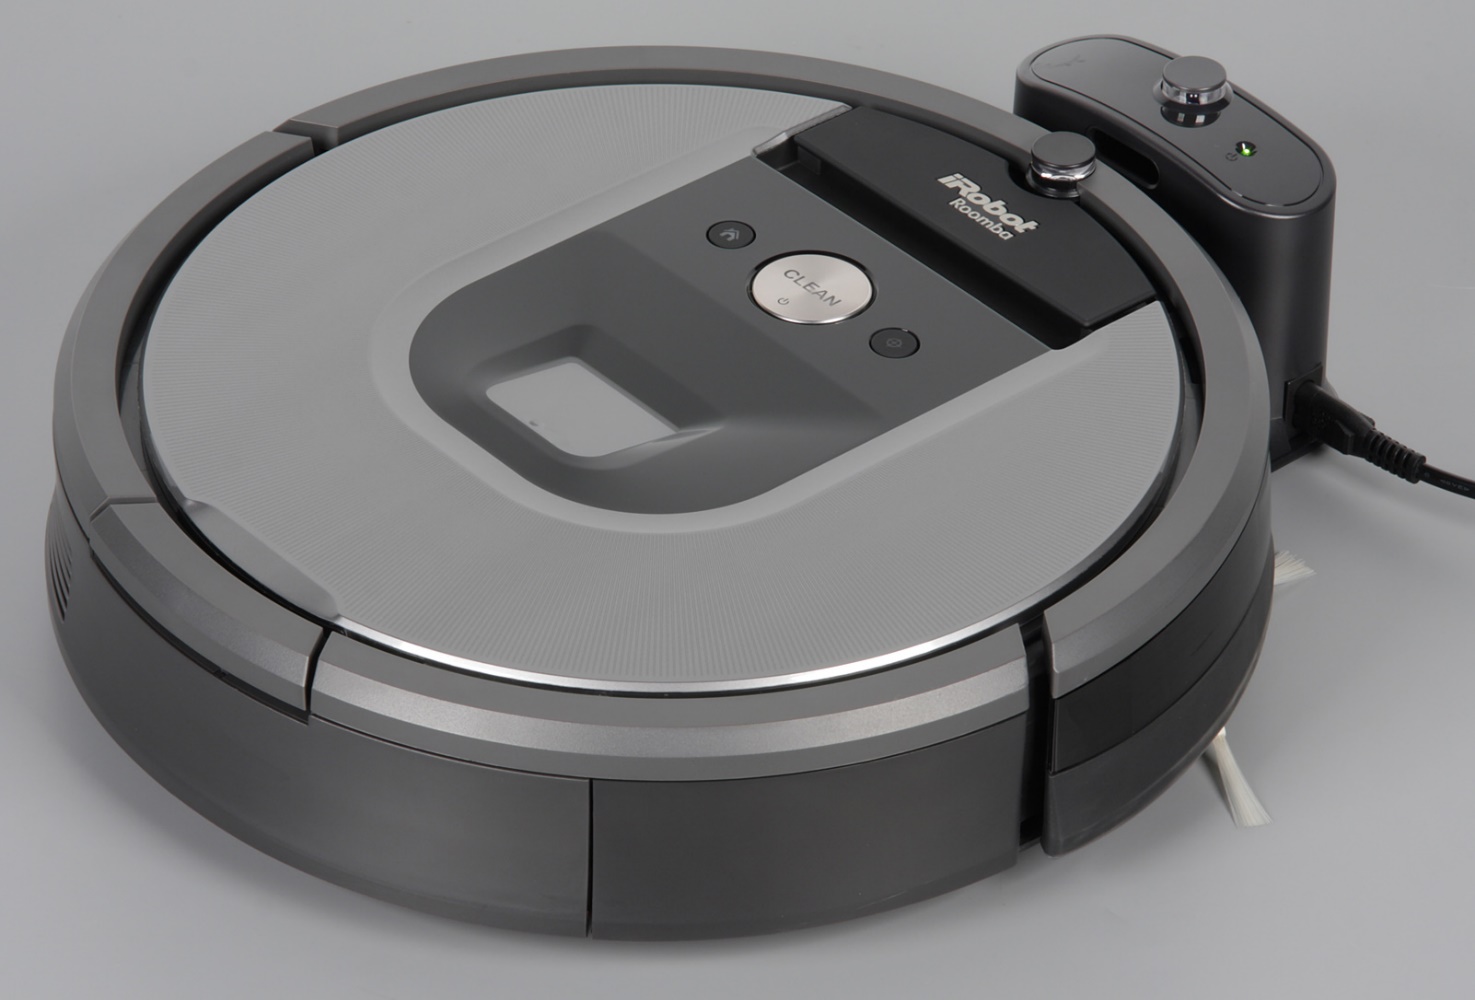 iRobot Roomba 960 on charging dock